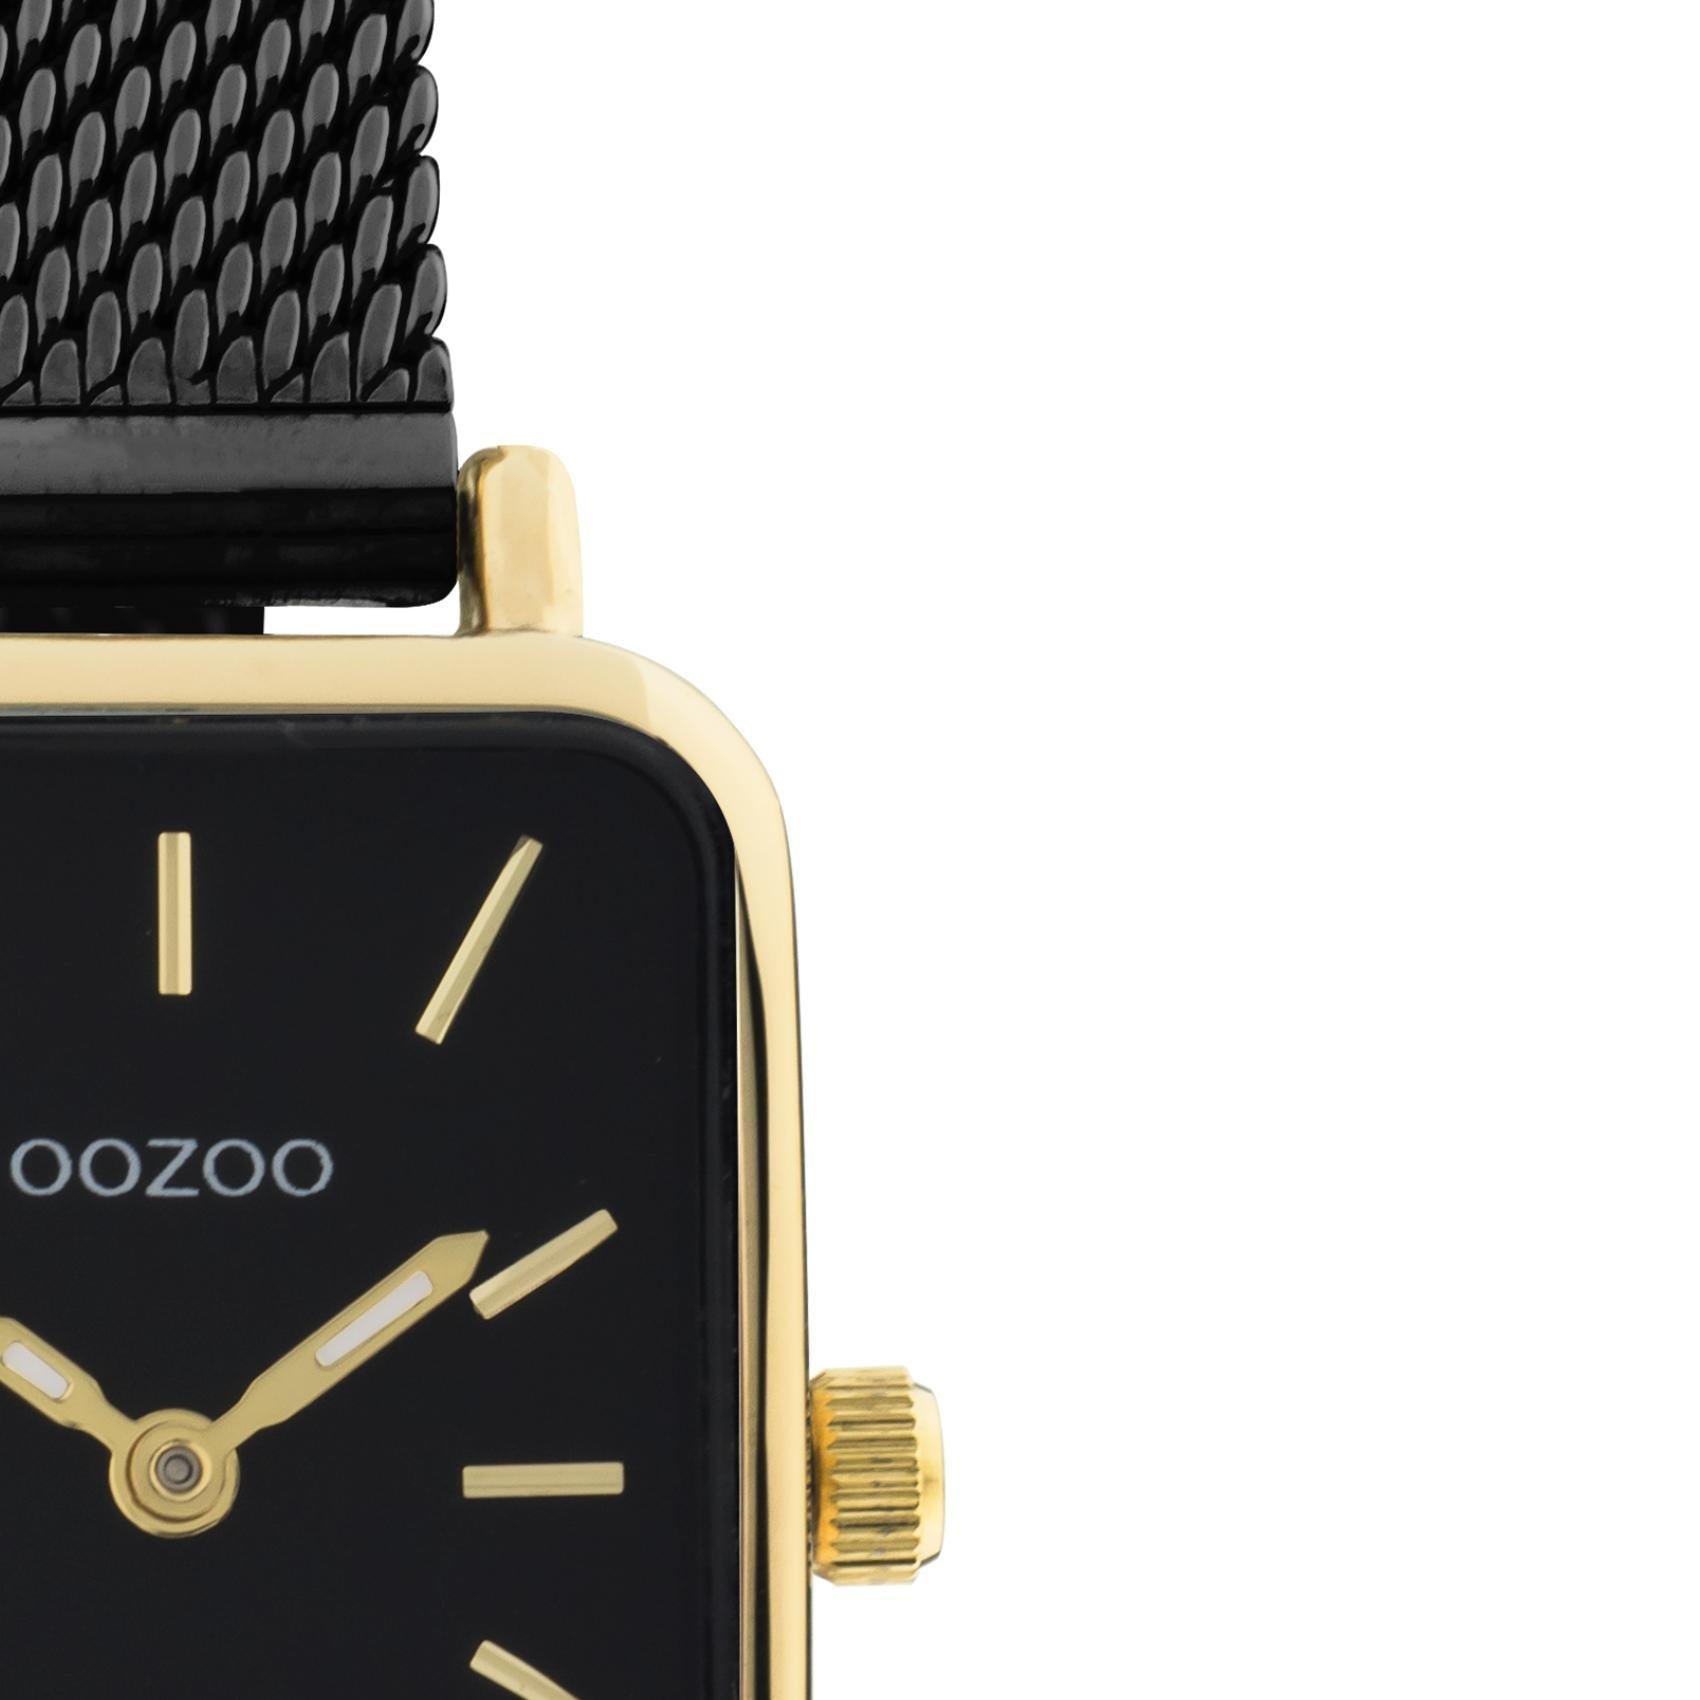 Τετράγωνο ρολόι Oozoo Vintage C20269 με μαύρο ατσάλινο μπρασελέ,μαύρο καντράν διαστάσεων 21x26mm και μηχανισμό μπαταρίας quartz.